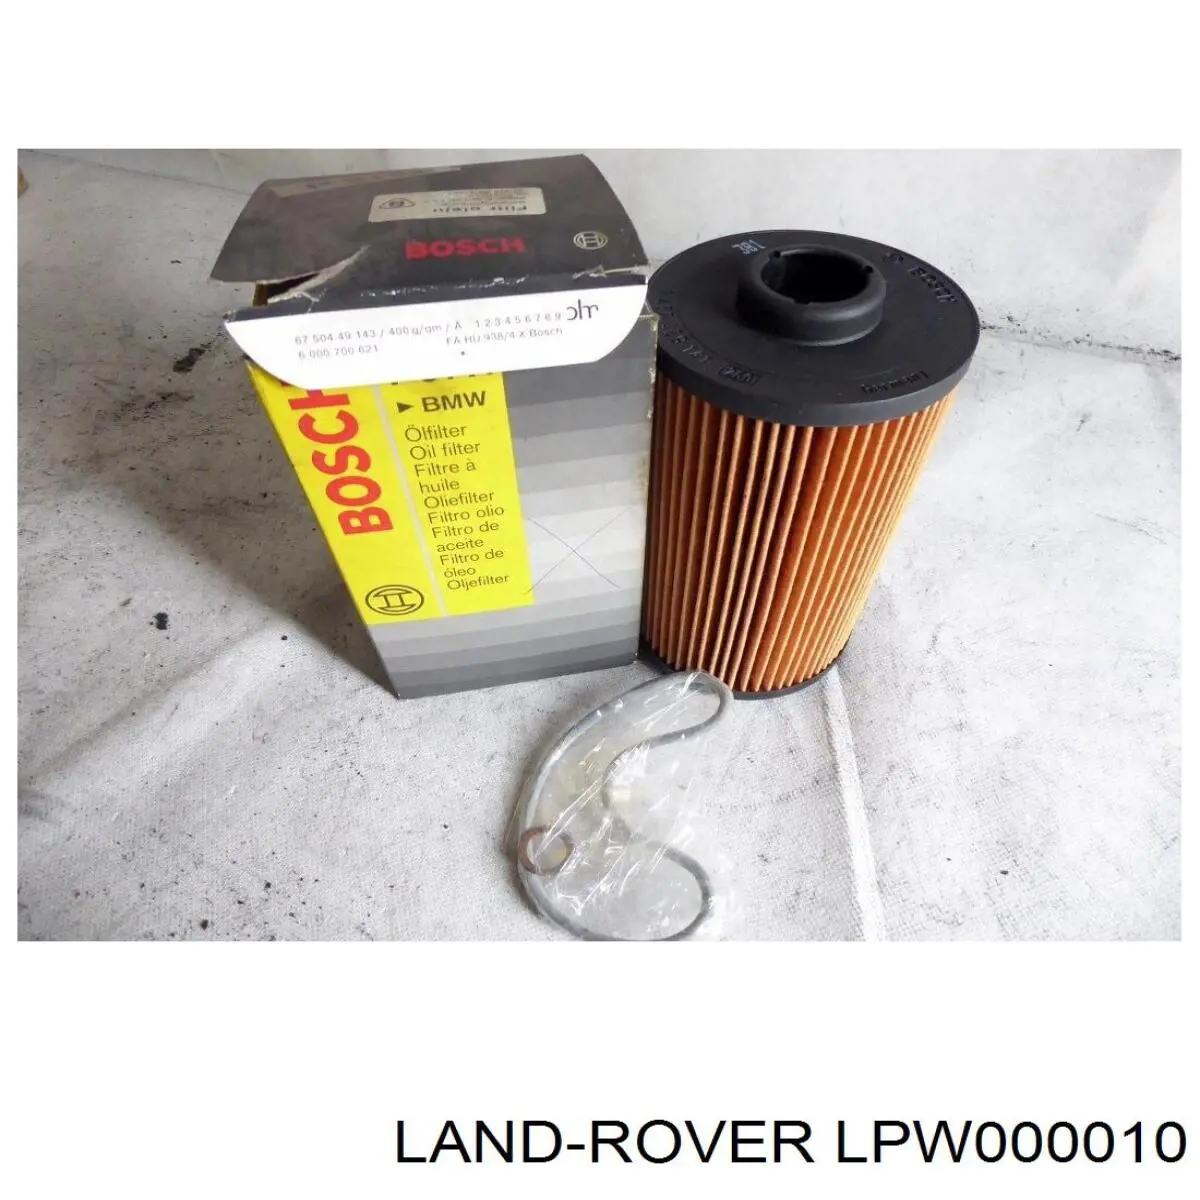 LPW000010 Land Rover filtro de aceite